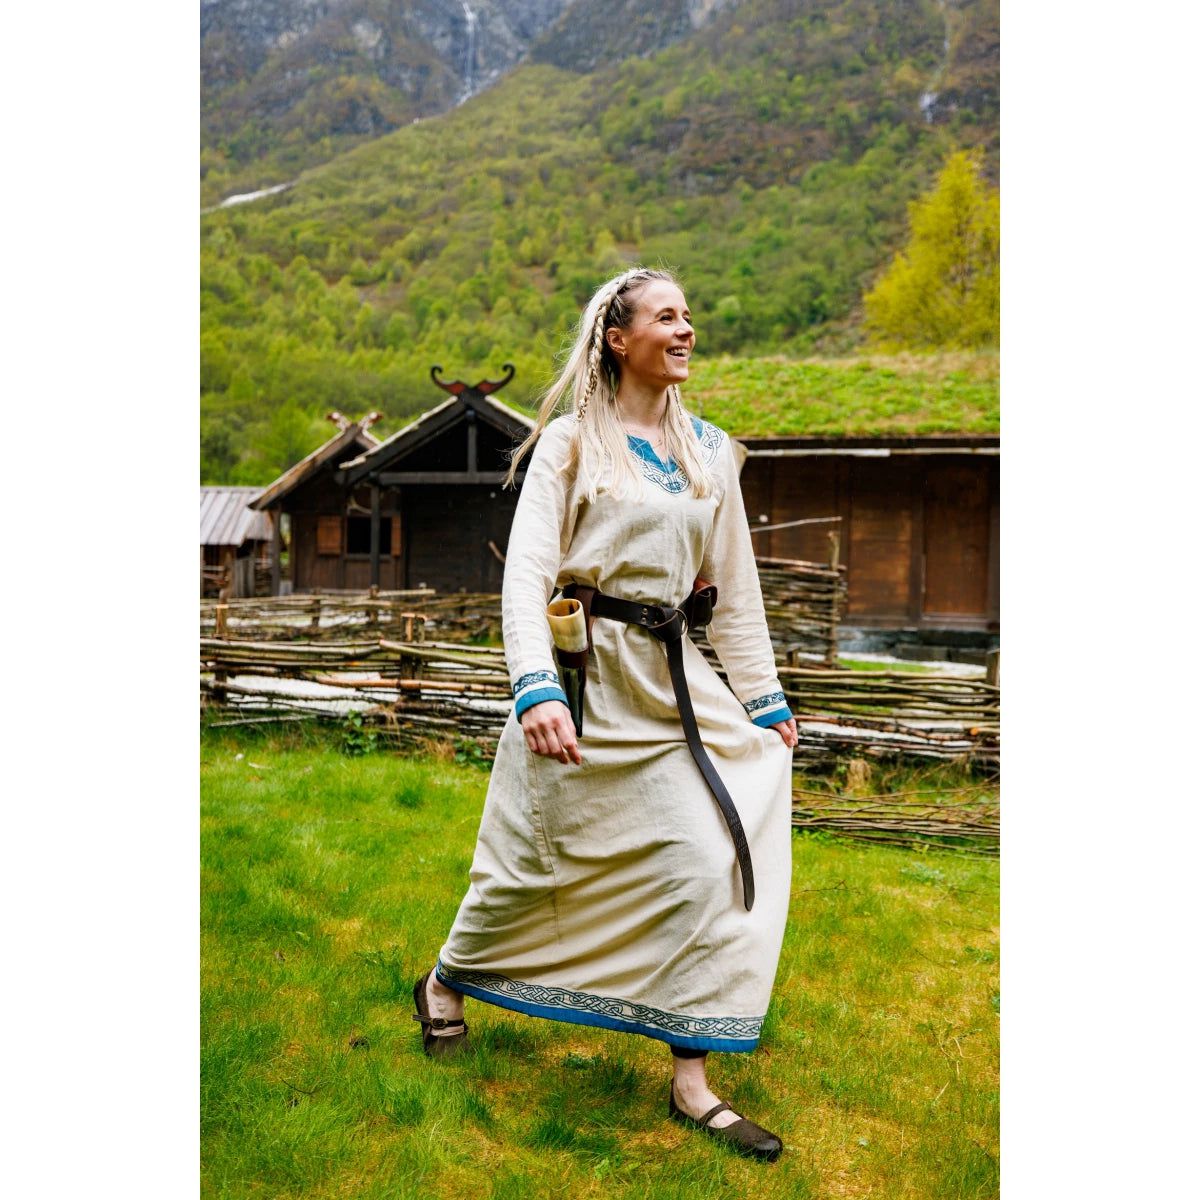 Vestido vikingo de algodón natural con ribete azul: la elegancia se une al espíritu guerrero